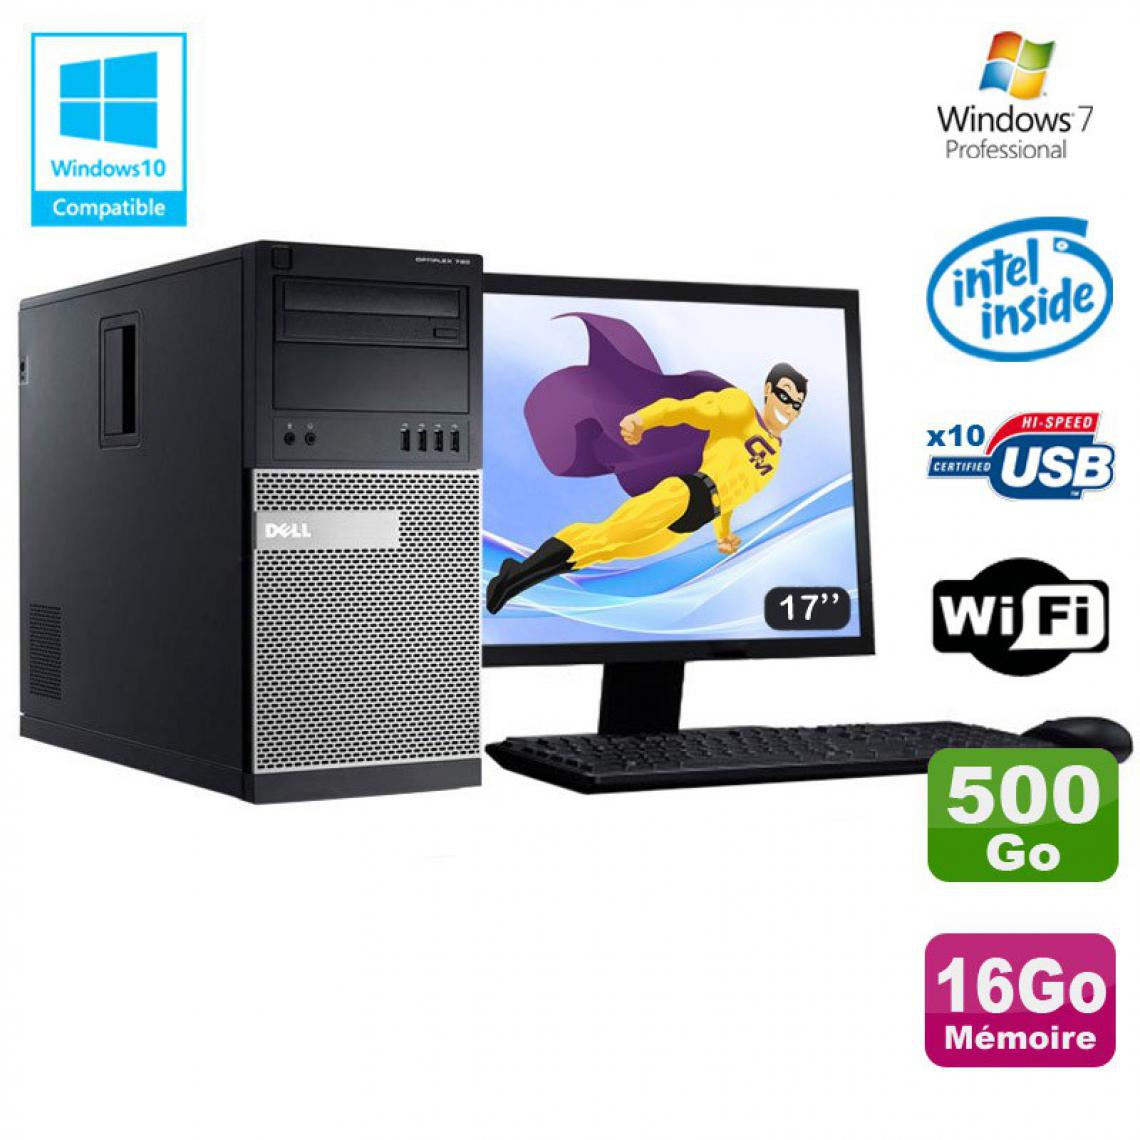 Dell - Lot PC Tour Dell 790 G630 2.7Ghz 16Go Disque 500Go DVD WIFI Win 7 + Ecran 17" - PC Fixe